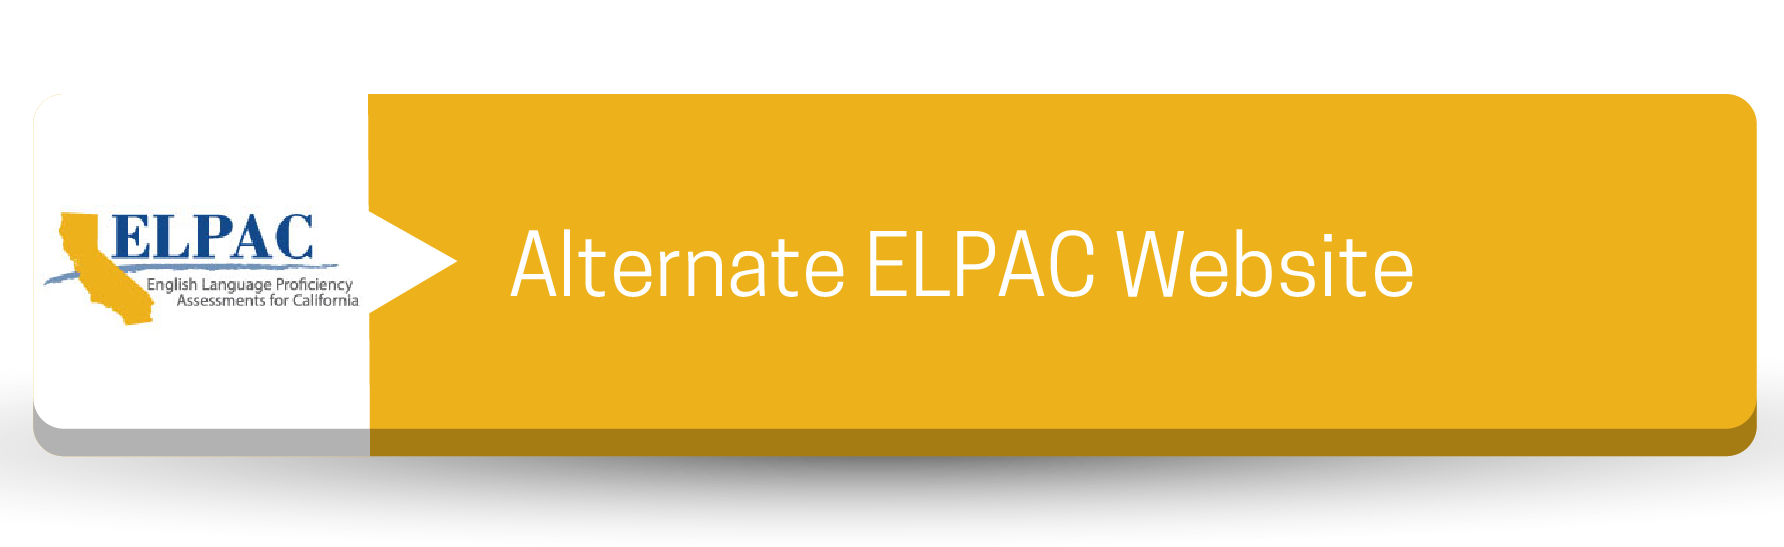 Alternate ELPAC Website